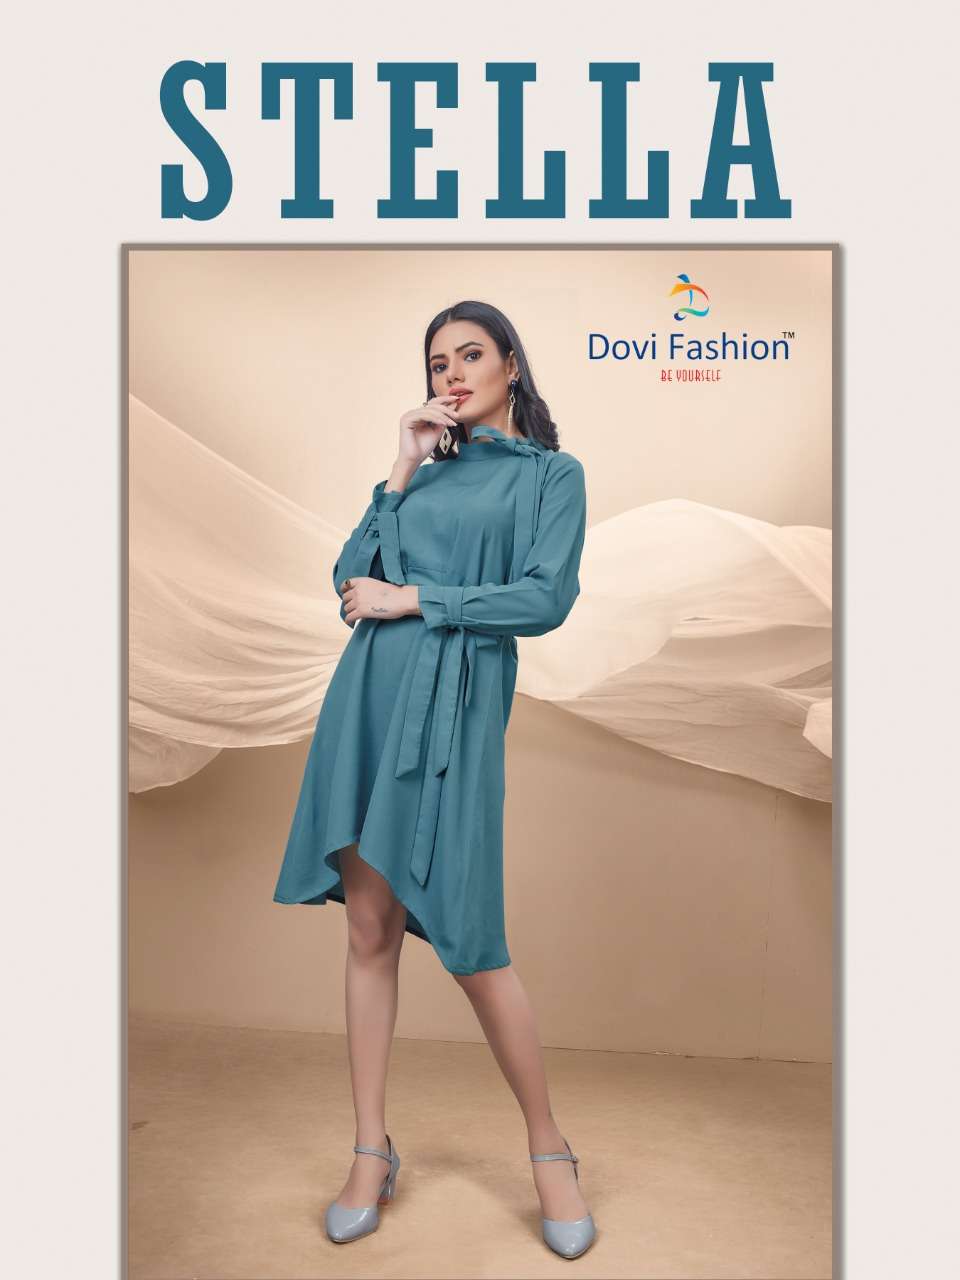 Dovi Fashion Stella Fancy Georgette Ladies Wear Ready to Wear Collection